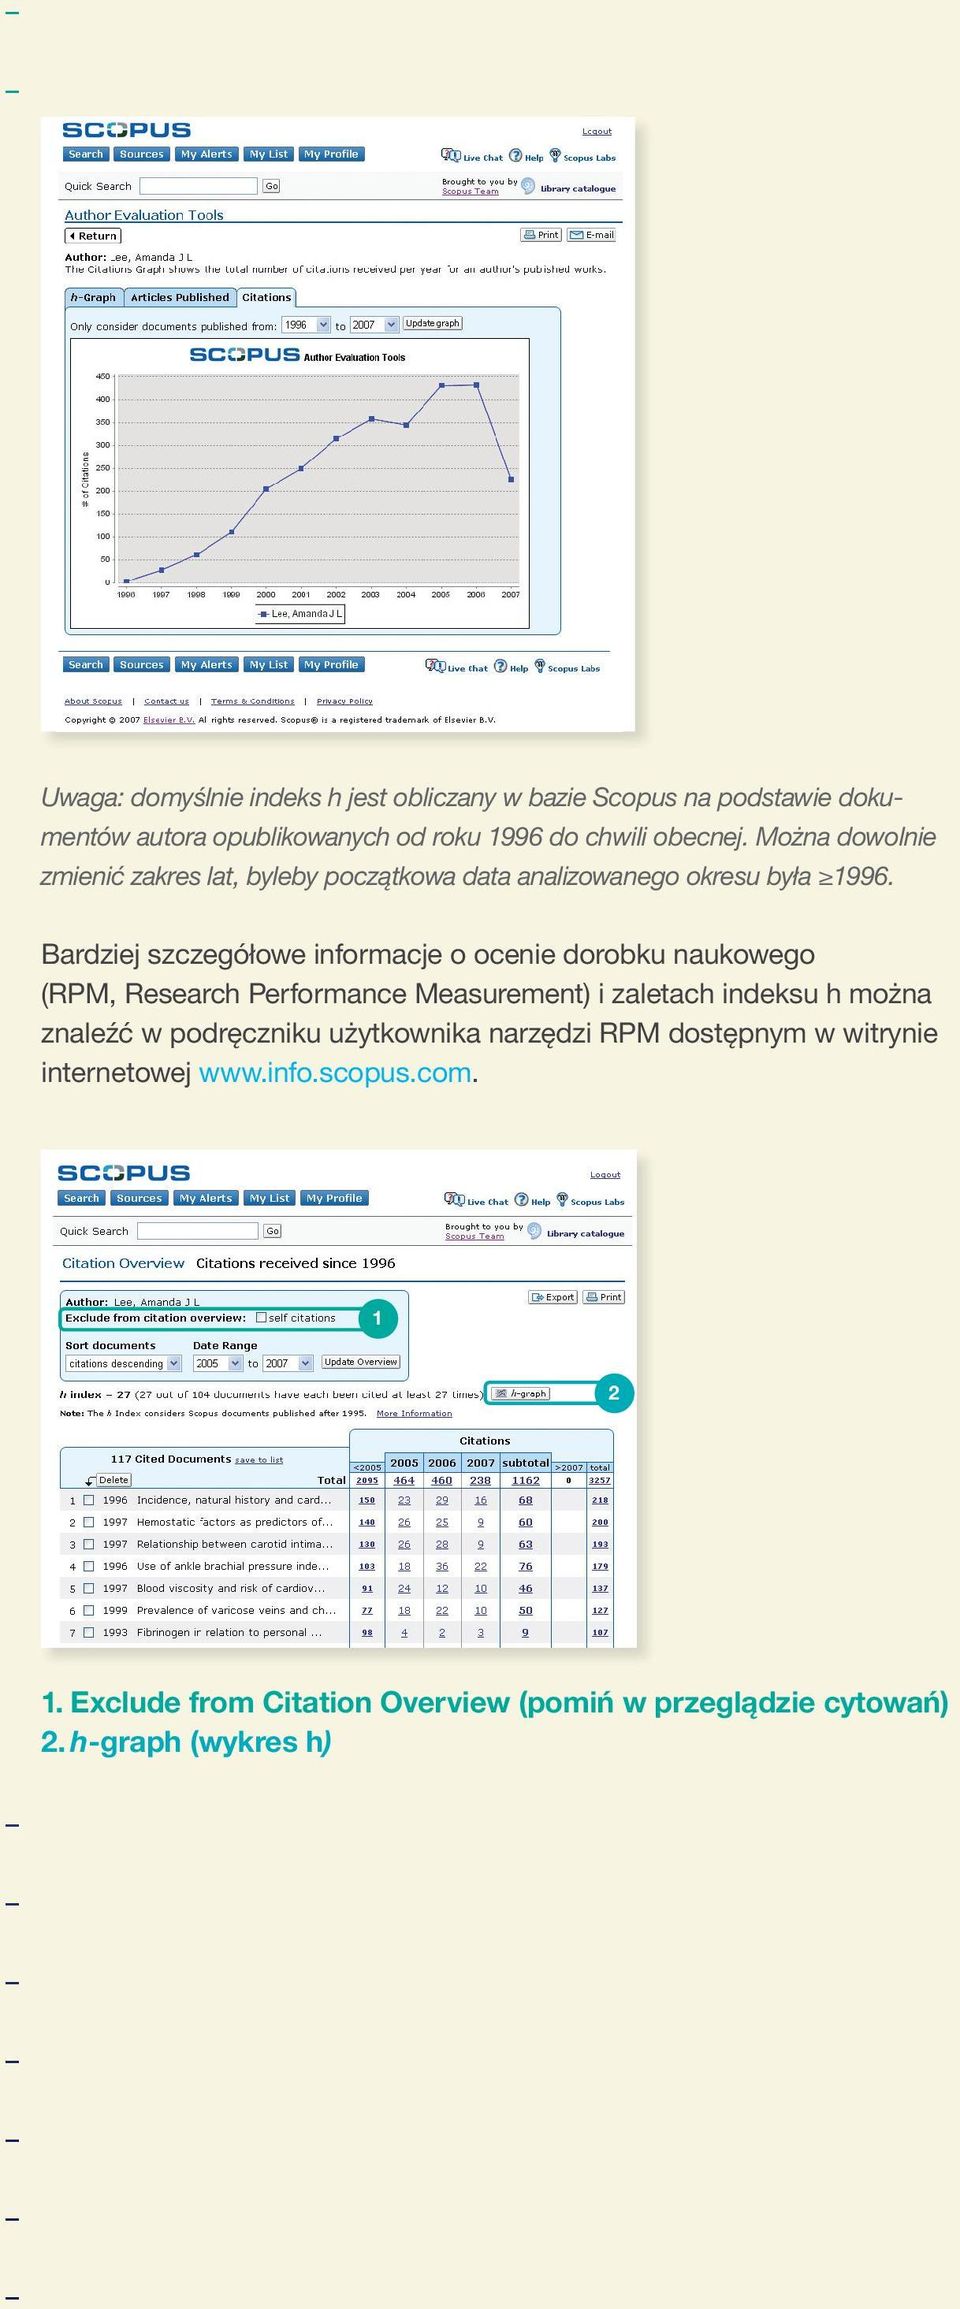 Bardziej szczegółowe informacje o ocenie dorobku naukowego (RPM, Research Performance Measurement) i zaletach indeksu h można